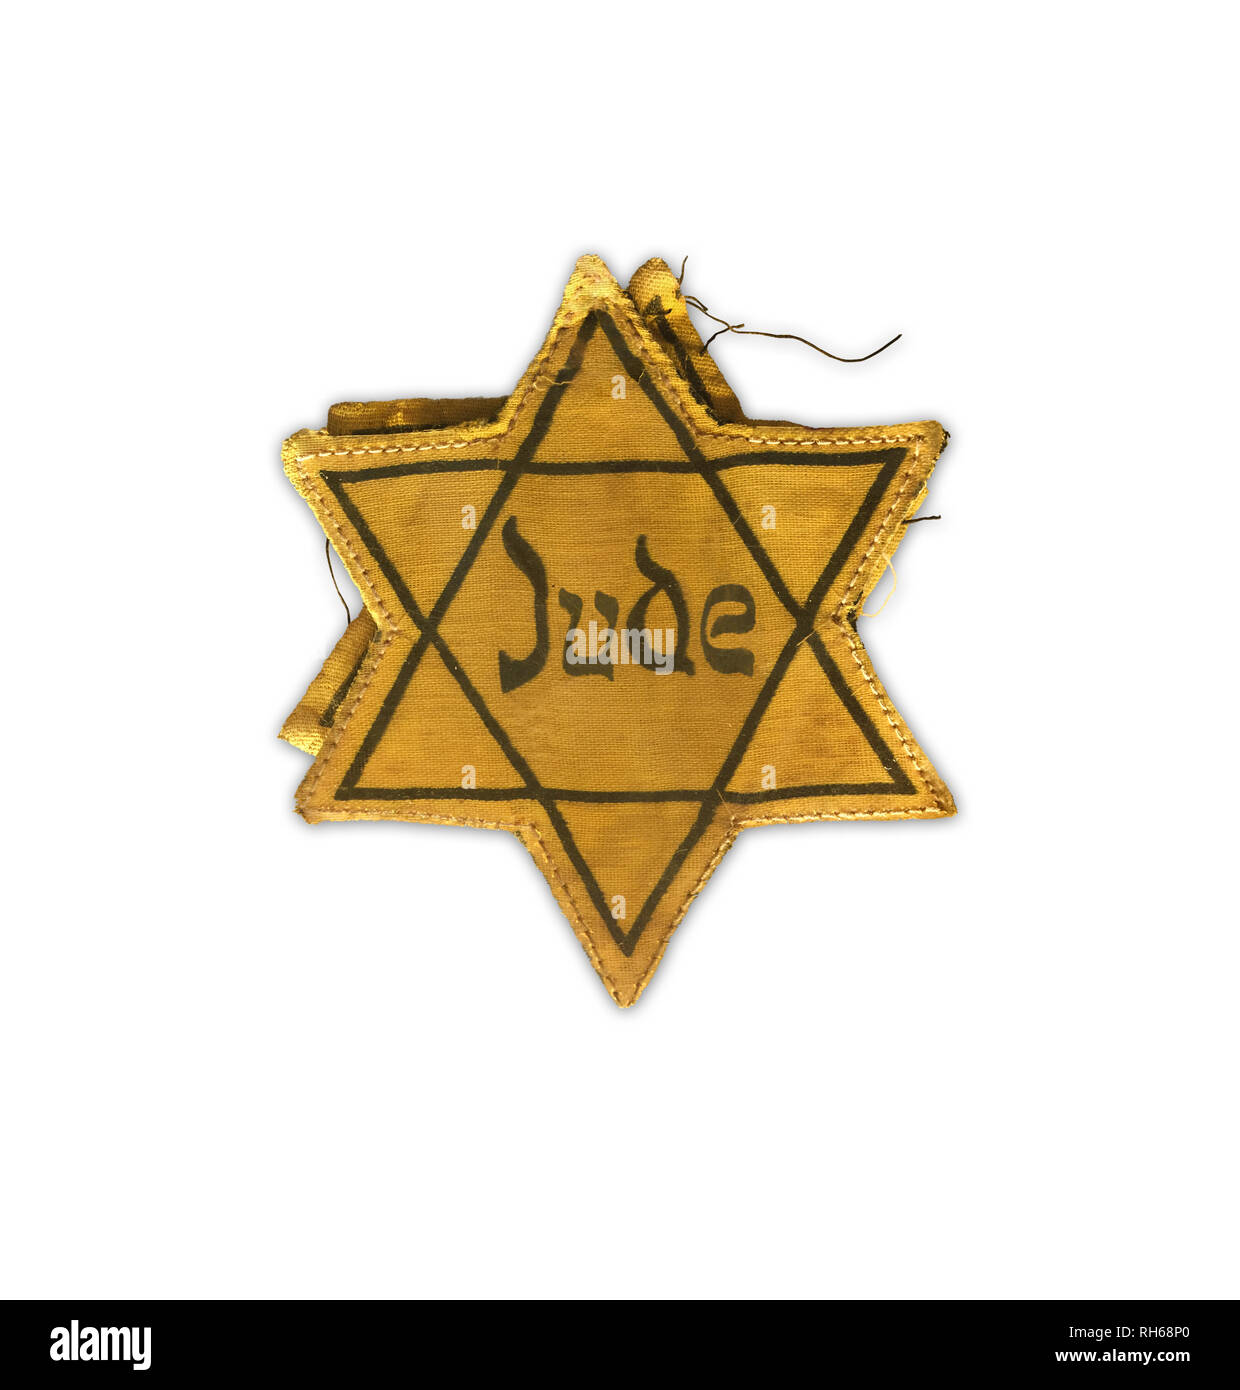 Hollocaust Tag der Erinnerung, Gelber Stern auf weißem Hintergrund. Das Wort Jude bedeutet Jude in deutscher Sprache. Stockfoto